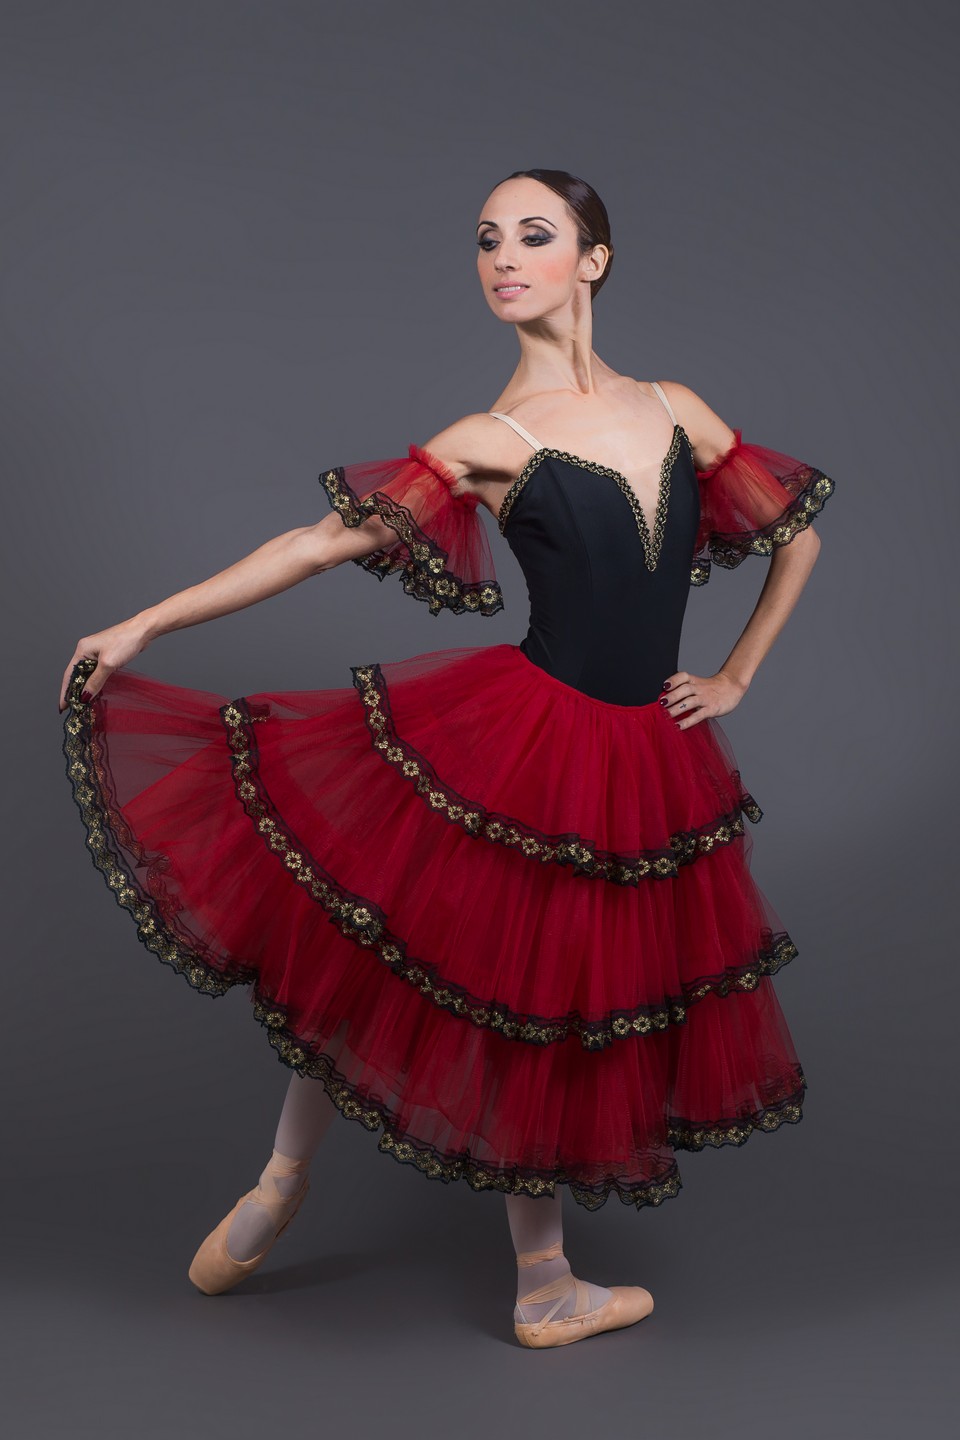 Godkendelse Site line fordøje Professional Tutu - Tailor and handmade ballet costumes